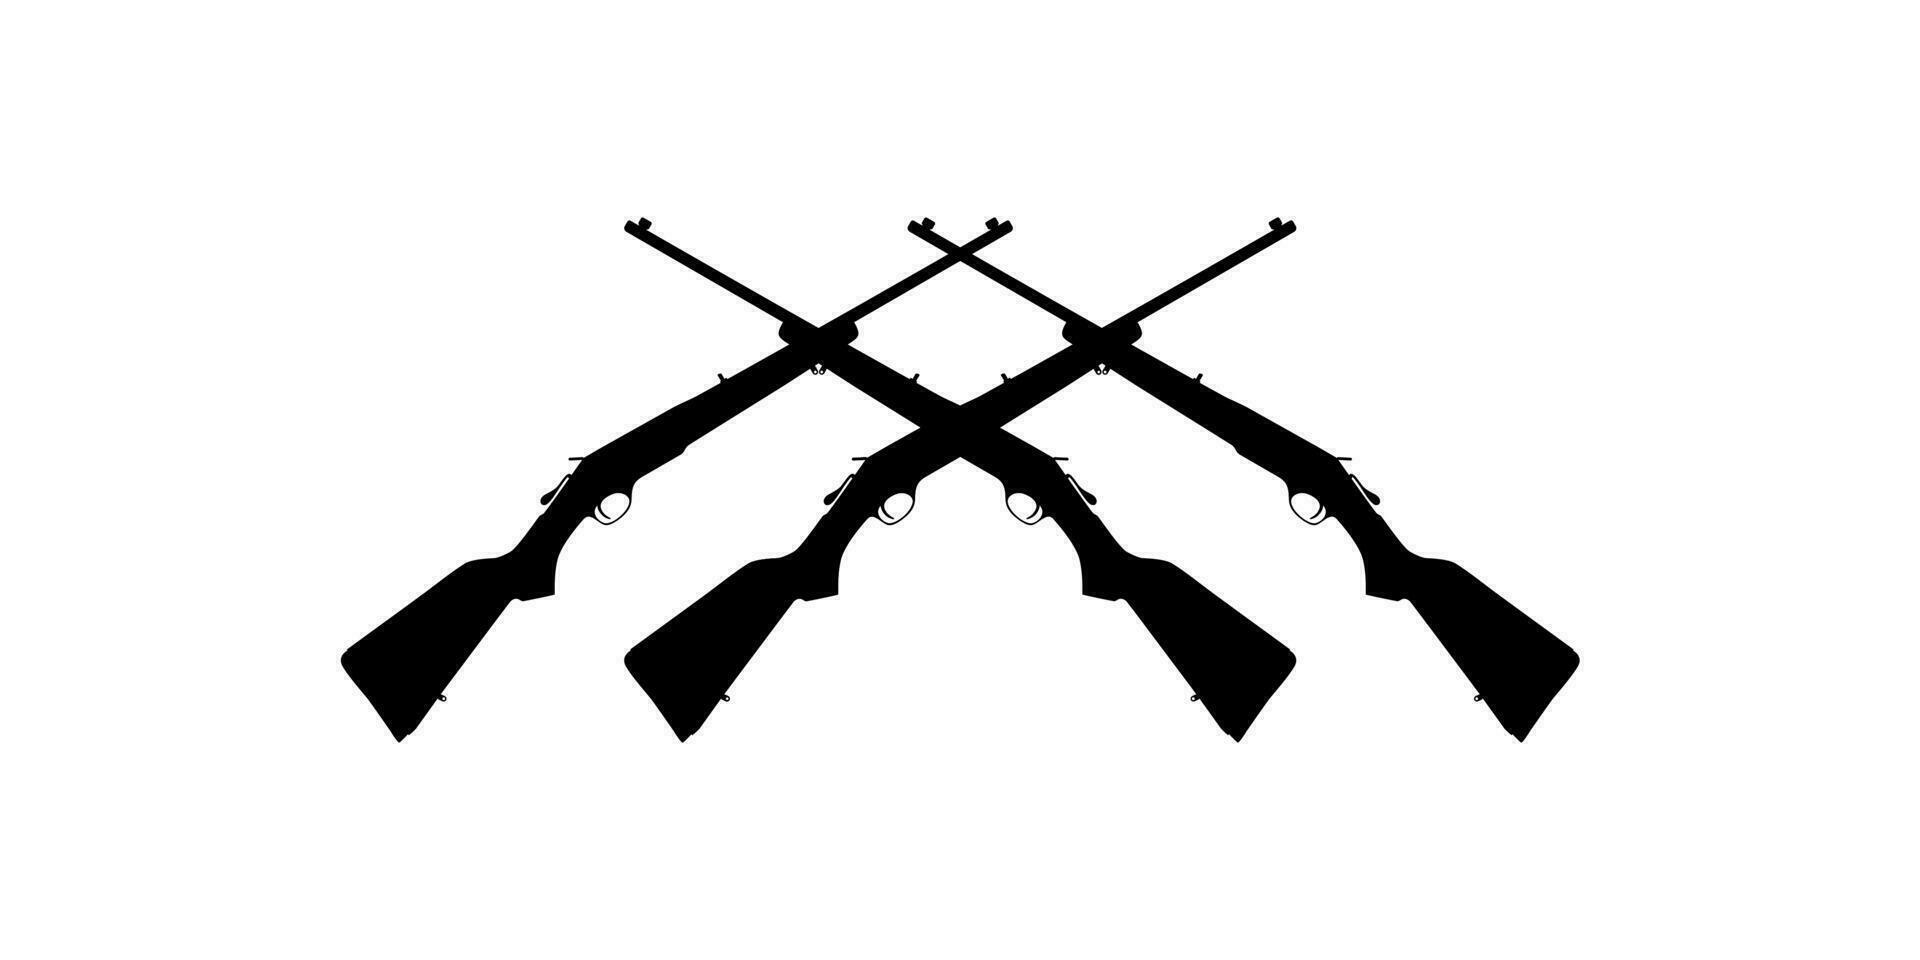 arma silueta, un largo pistola es un categoría de armas de fuego con largo barriles, para pictograma. logo, aplicaciones, sitio web, Arte ilustración o gráfico diseño elemento. vector ilustración